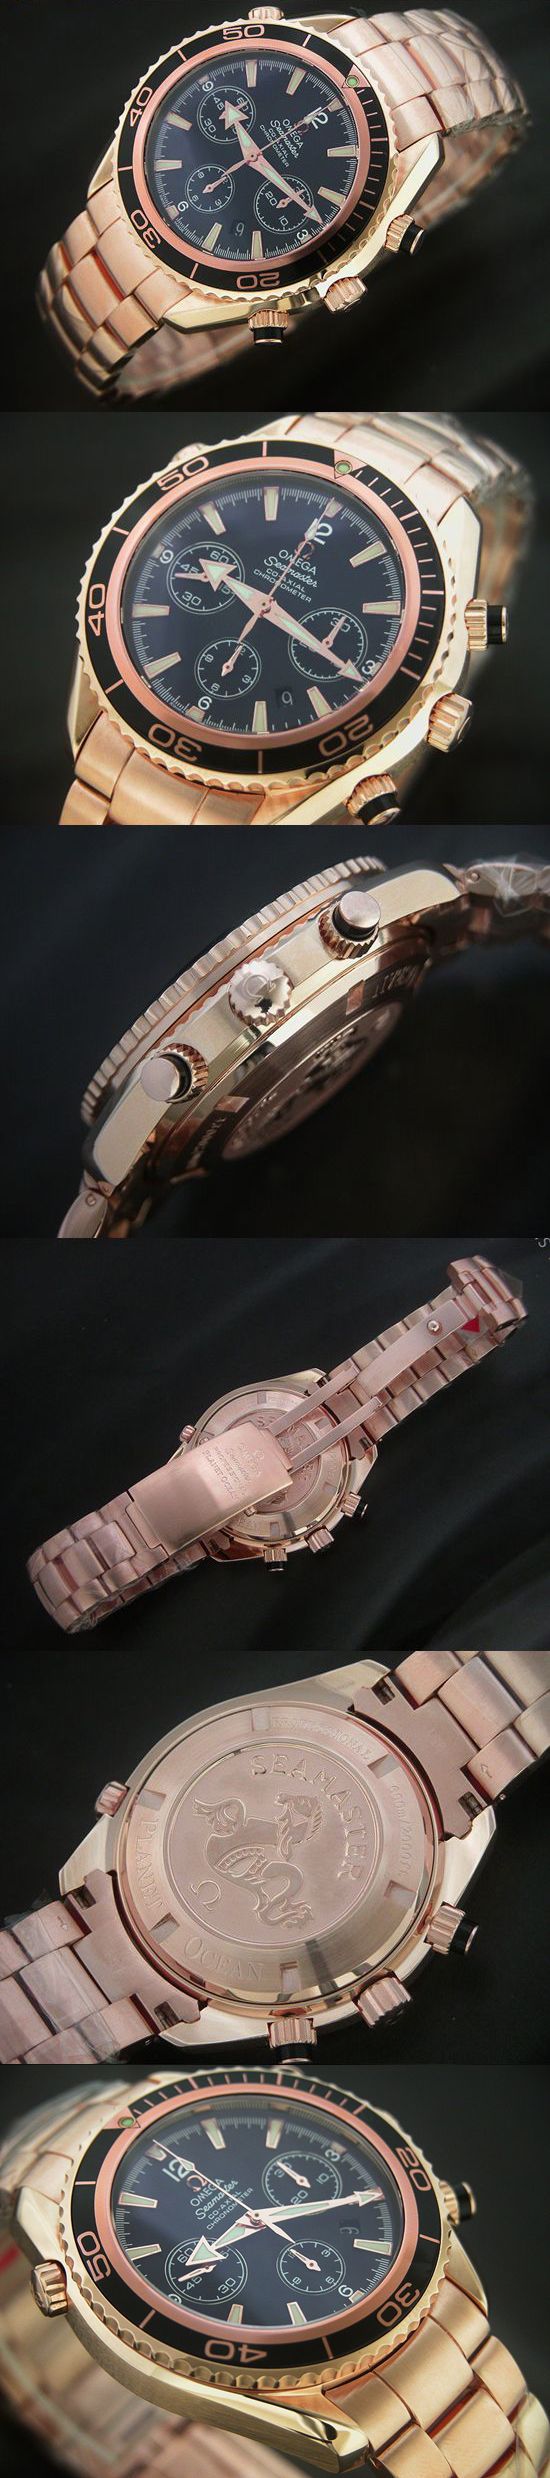 おしゃれなブランド時計がオメガ-シーマスター-OMEGA-2210.50-az-男性用を提供します.